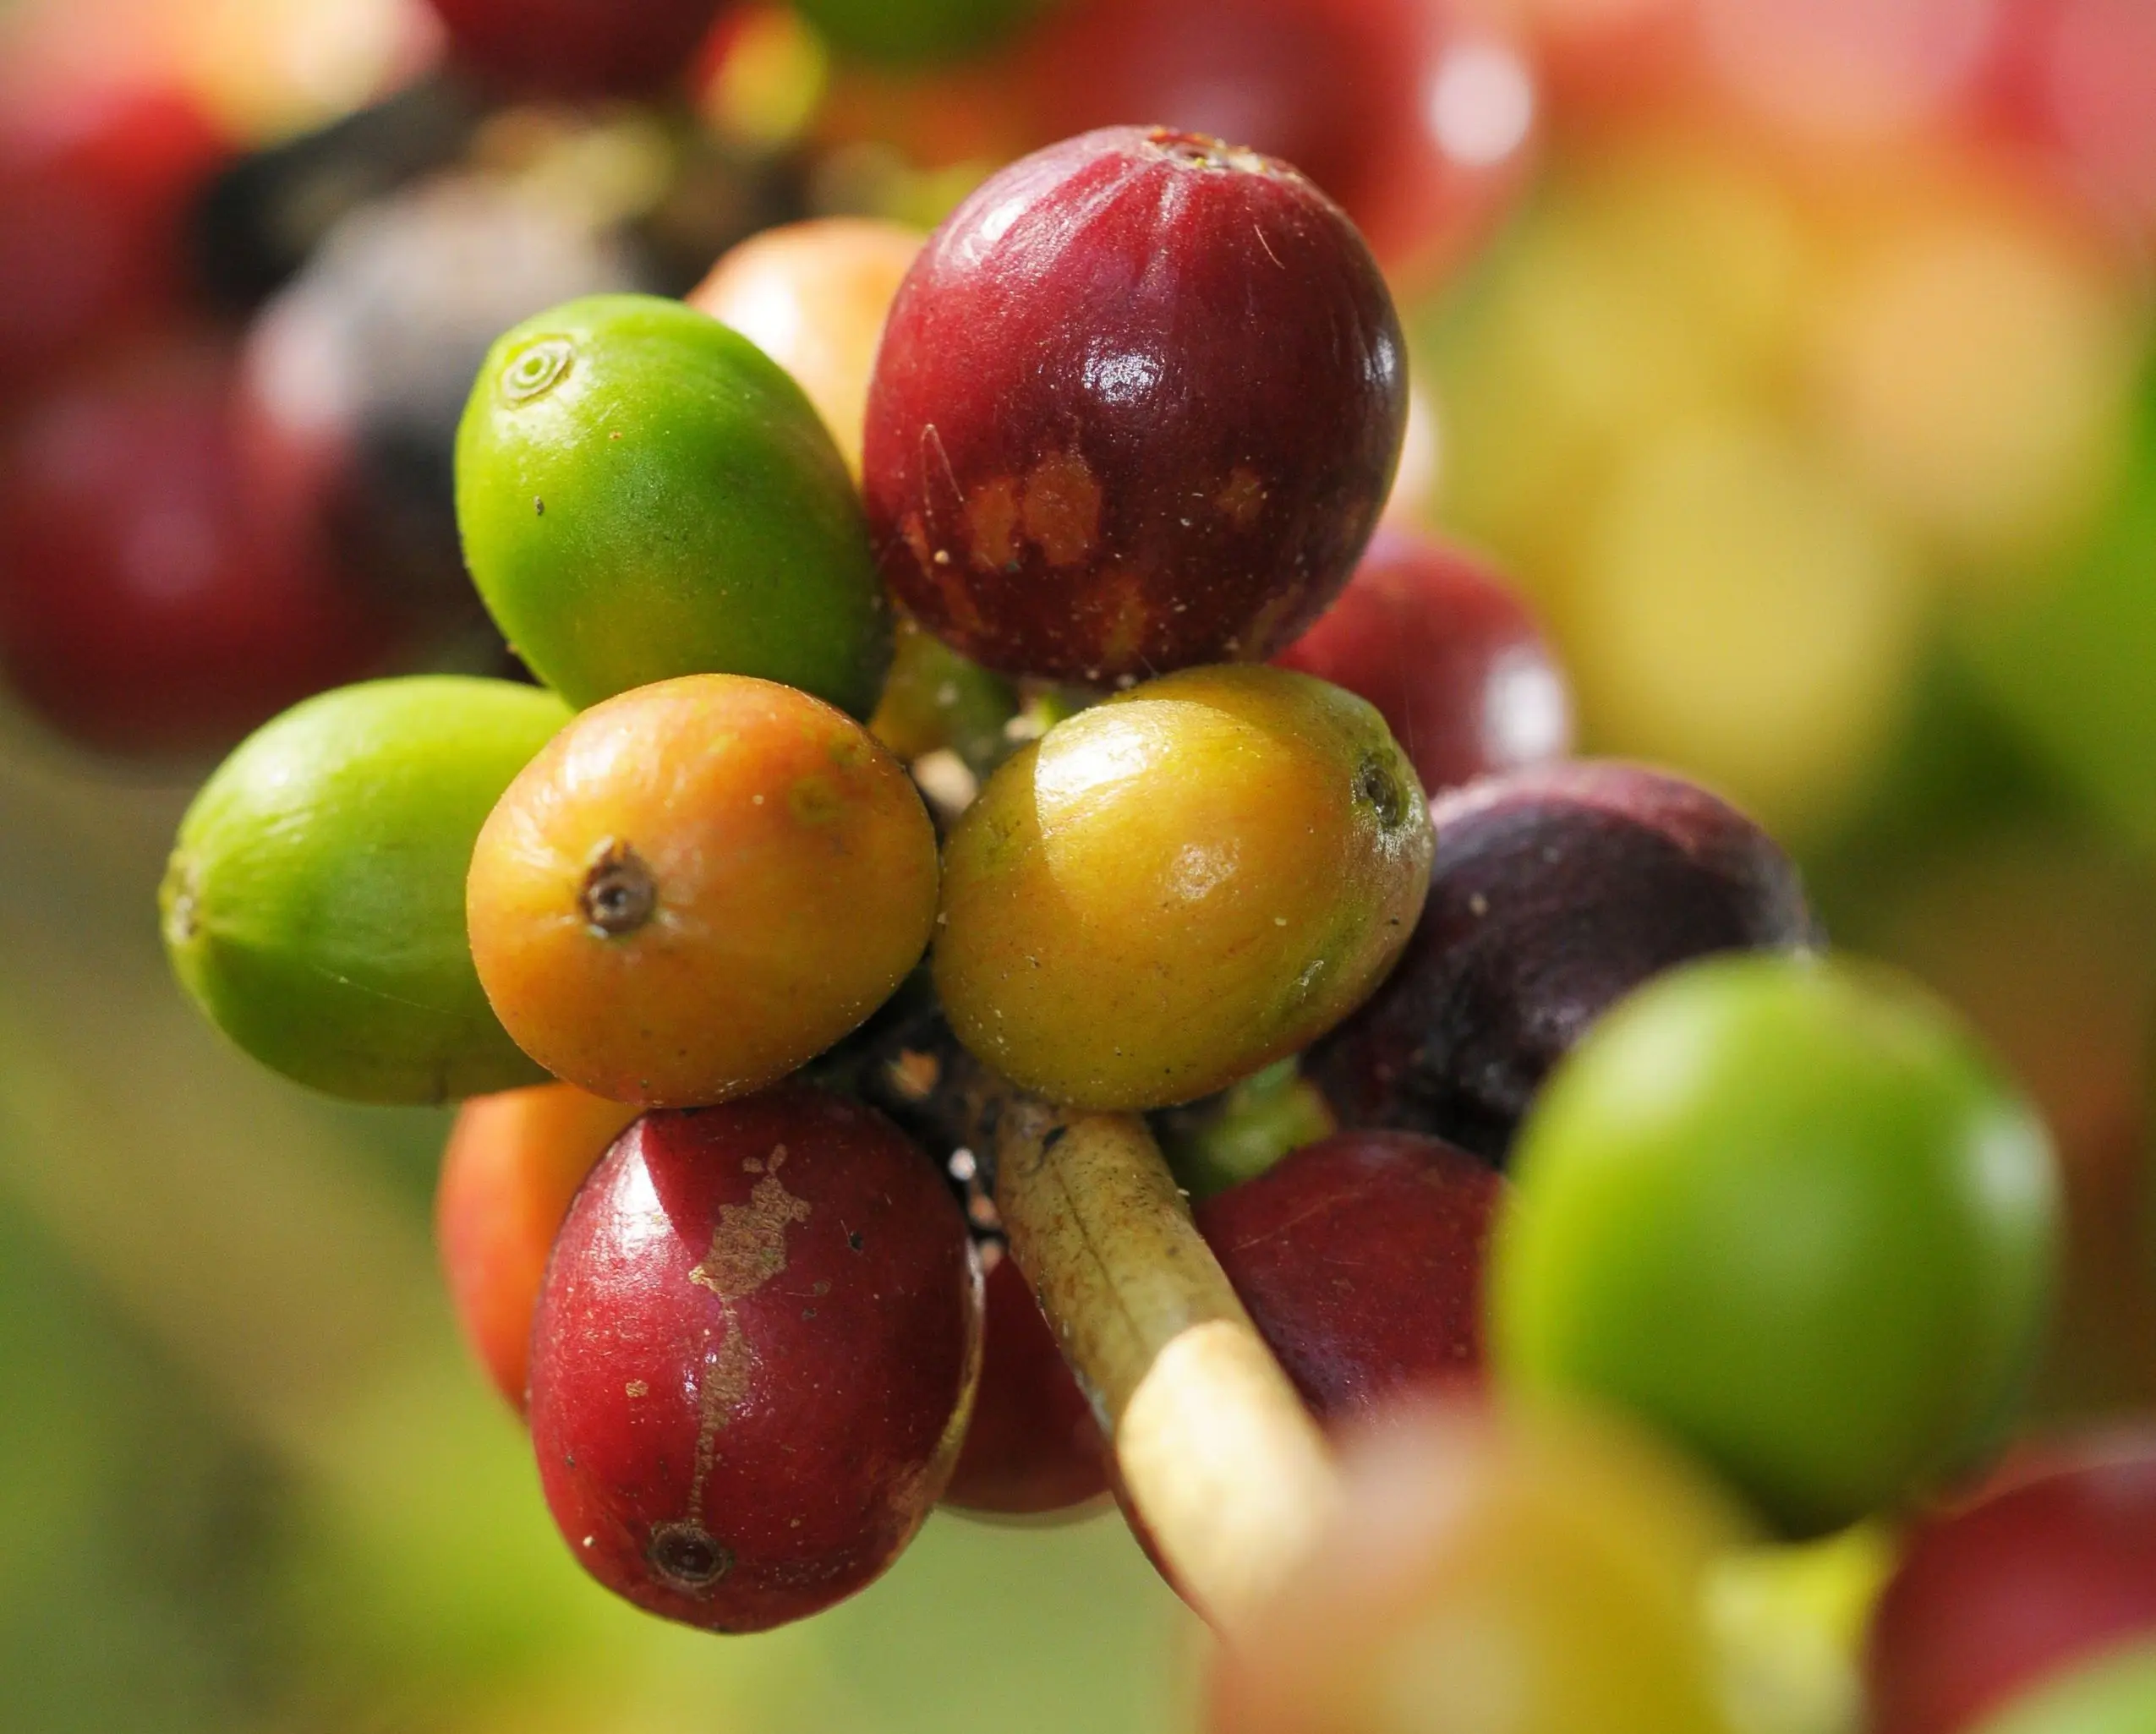 como se llama el fruto del cafe - Cómo se le llama a la fruta del café